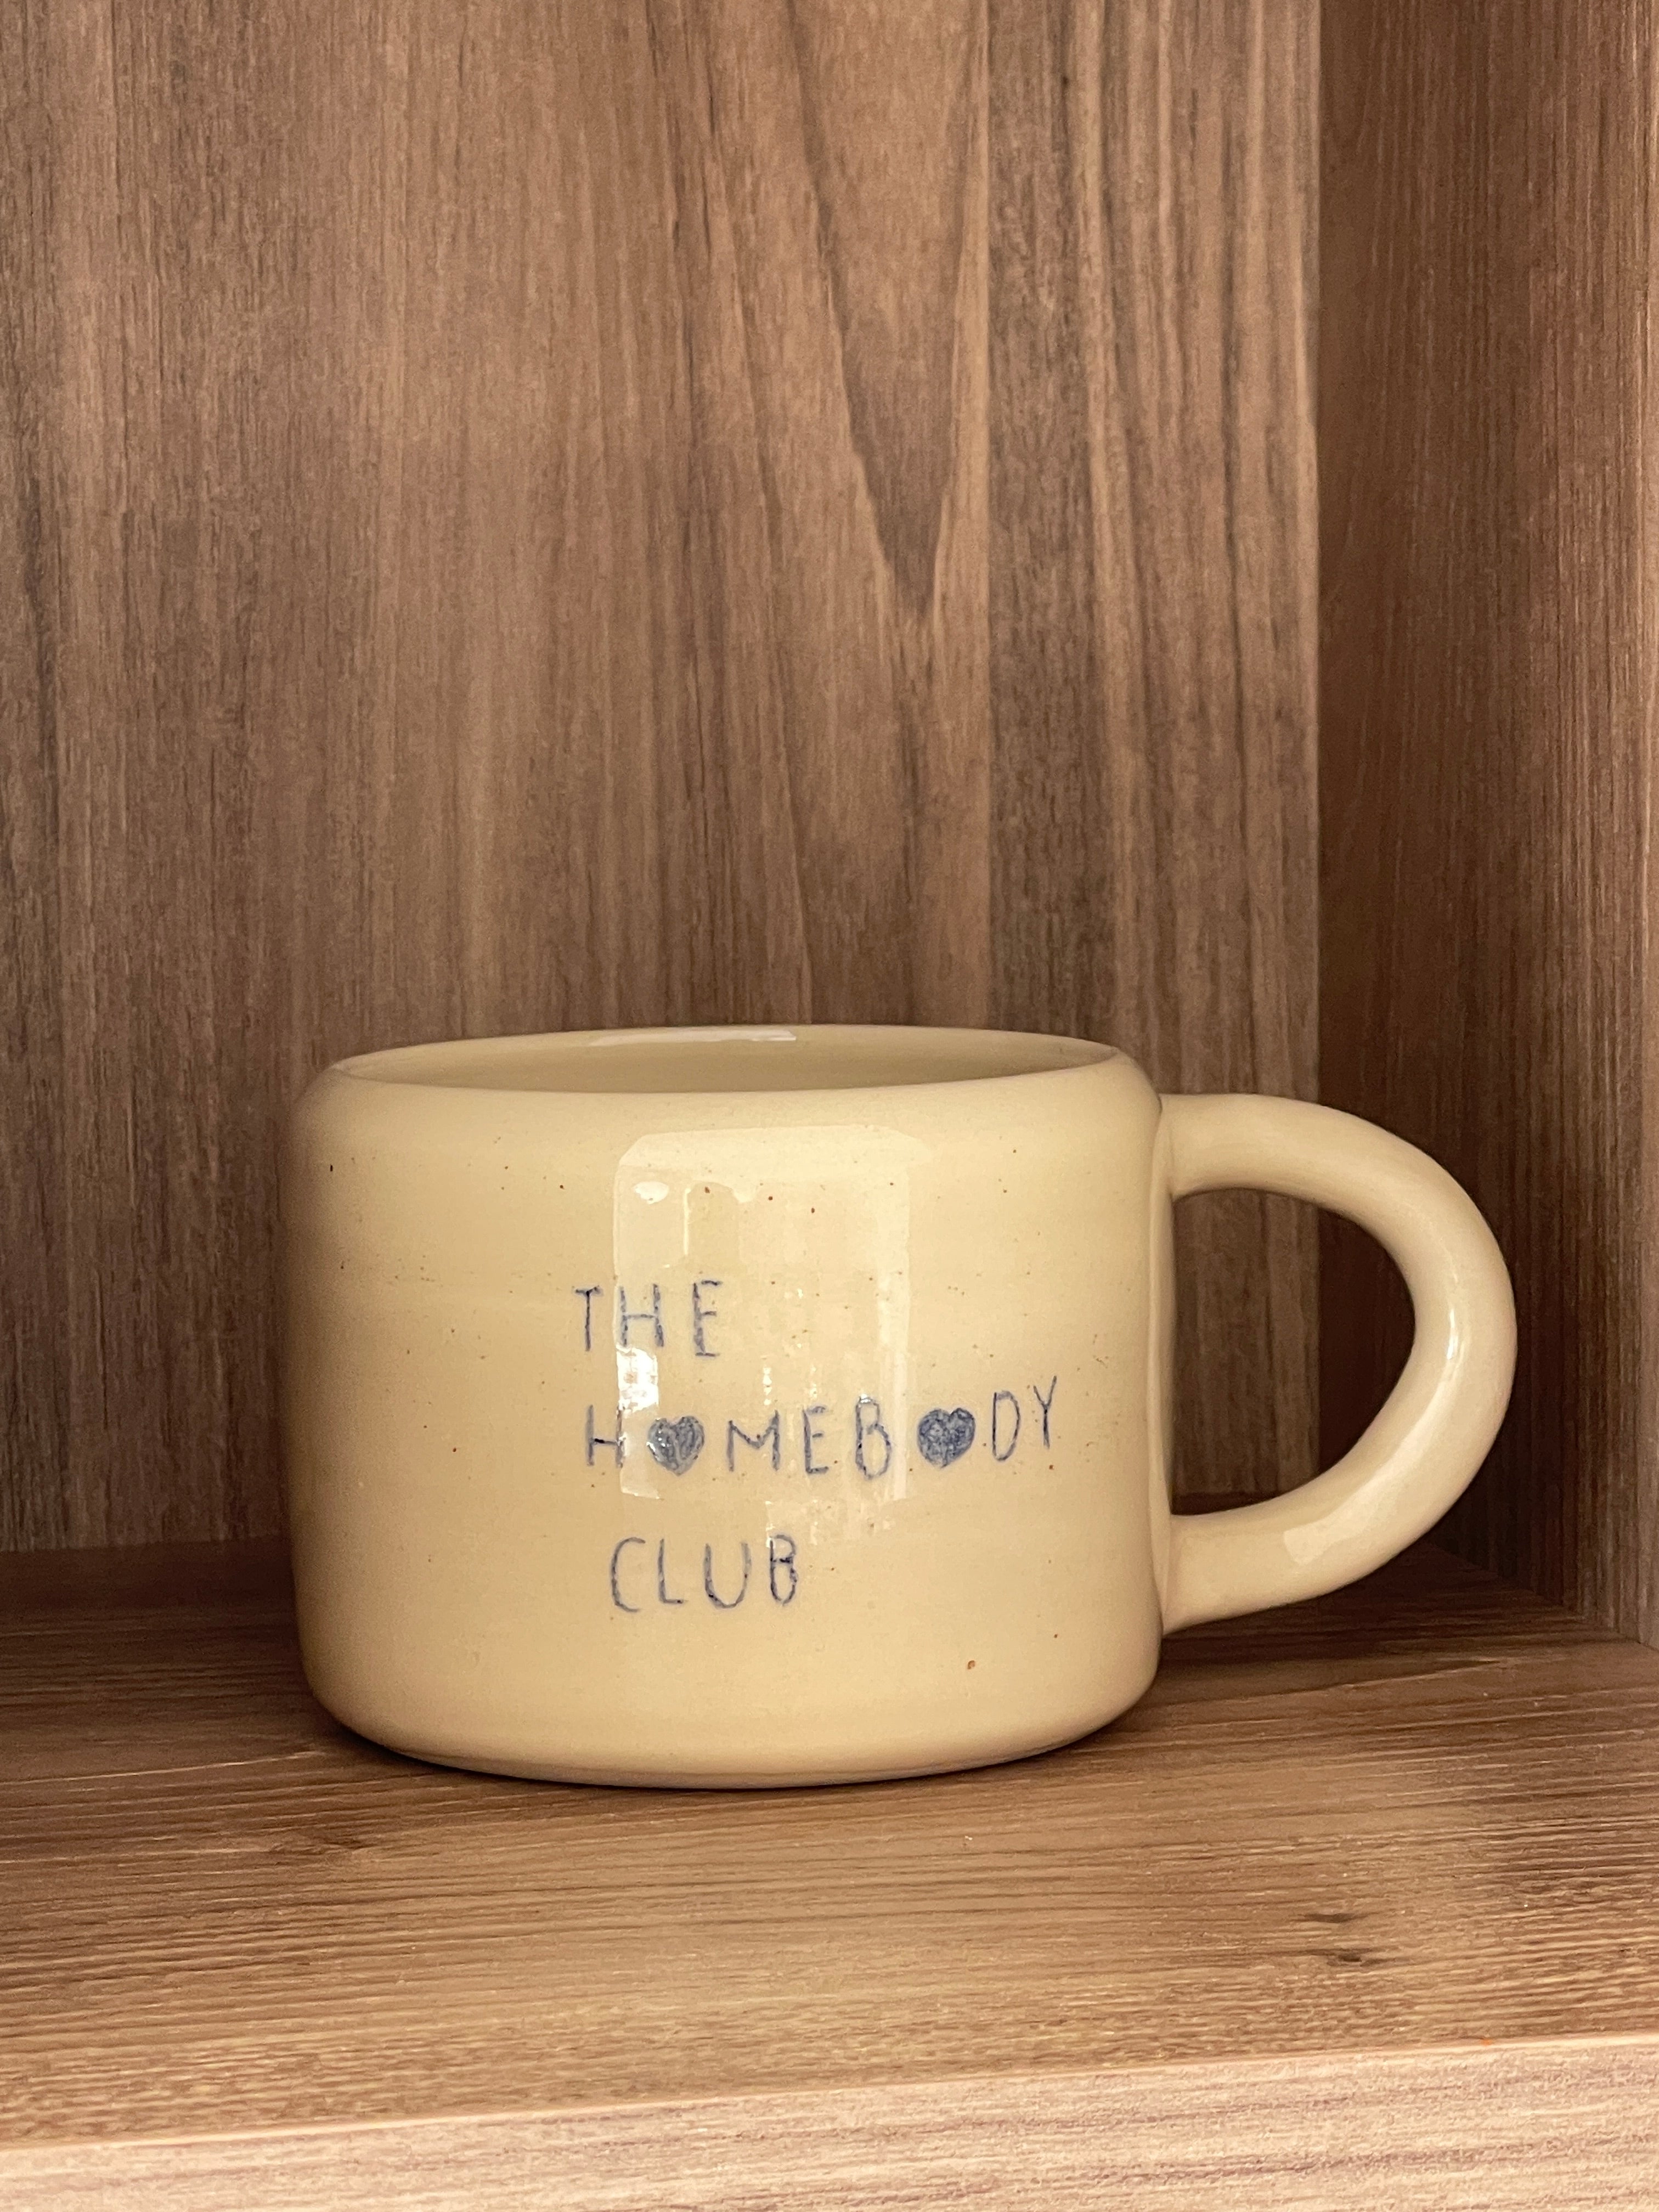 The Homebody Club Mug